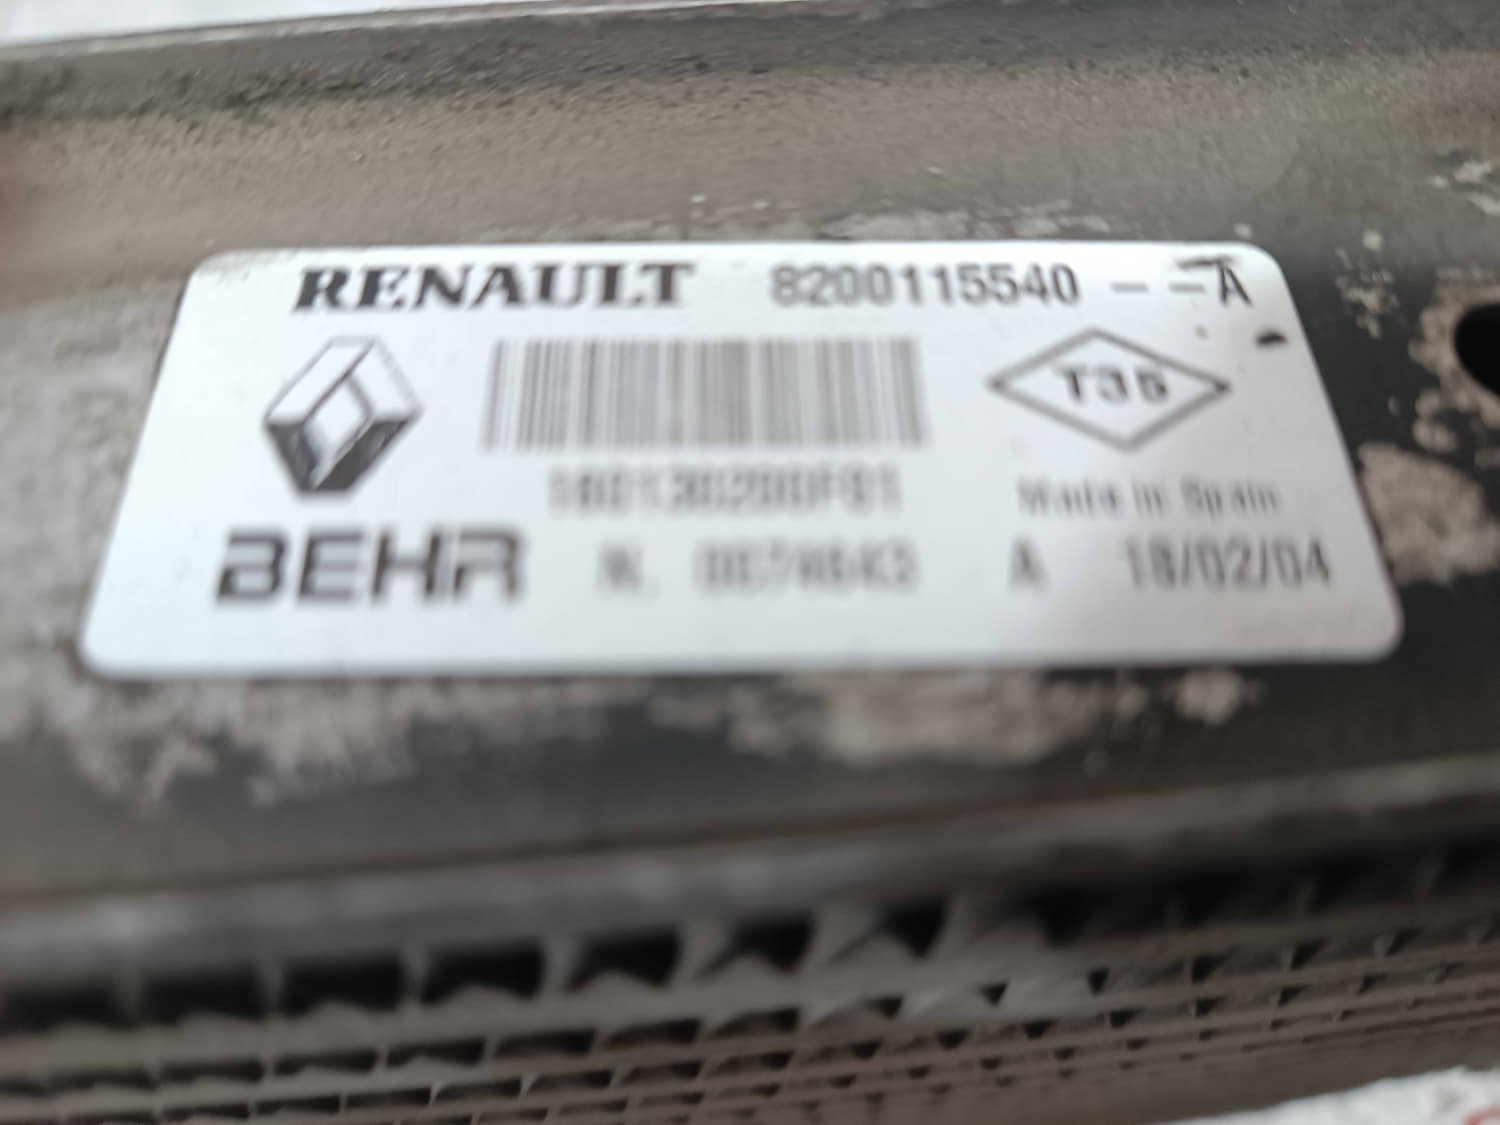 RENAULT Scenic 2 generation (2003-2010) Радиатор интеркулера 8200115540 24805931